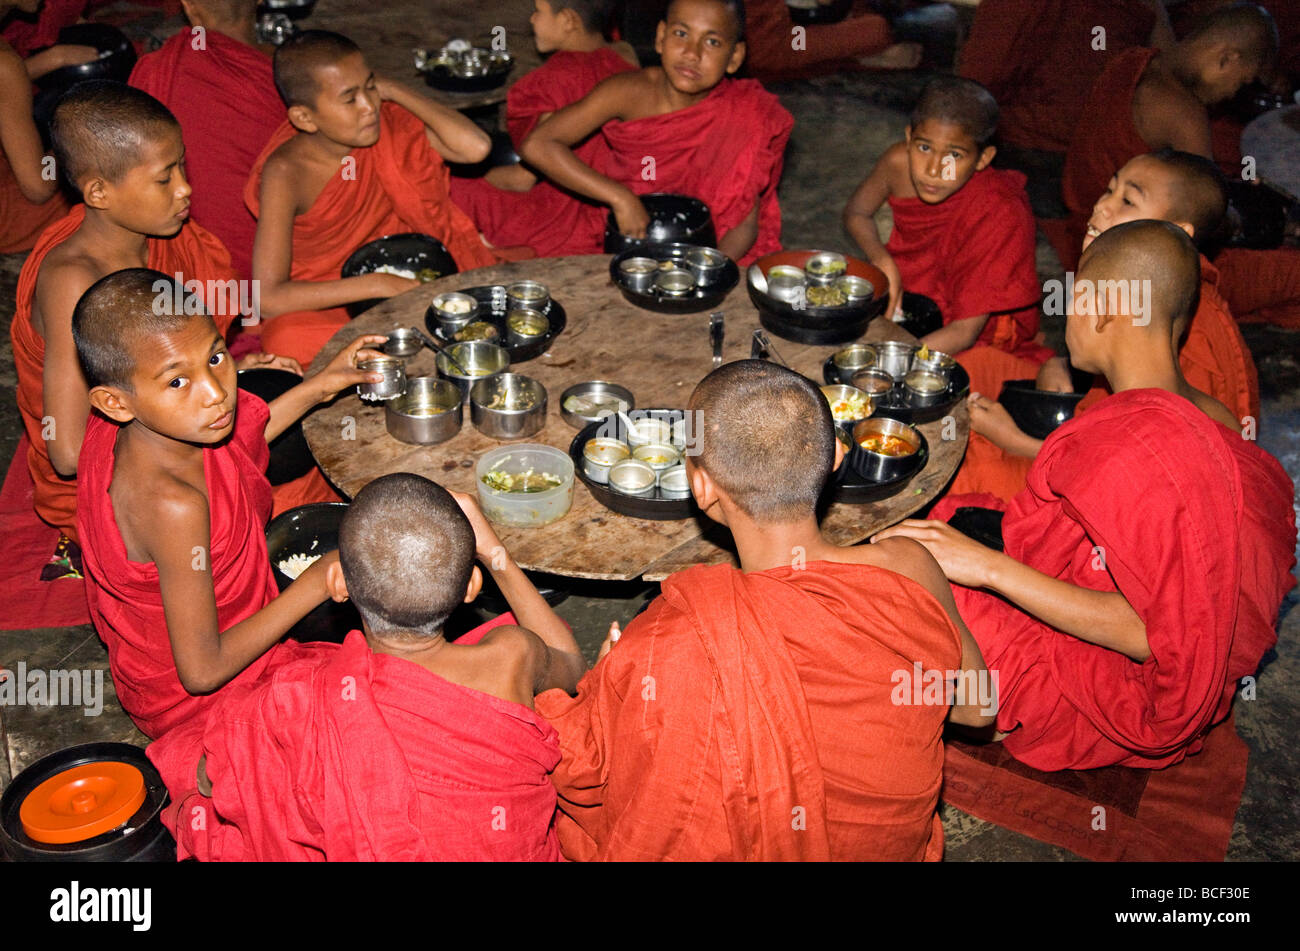 Le Myanmar, la Birmanie, l'État de Rakhine, Sittwe. Les jeunes moines novices mangent leur repas principal à Pathain monastère où 210 moines vivent. Banque D'Images